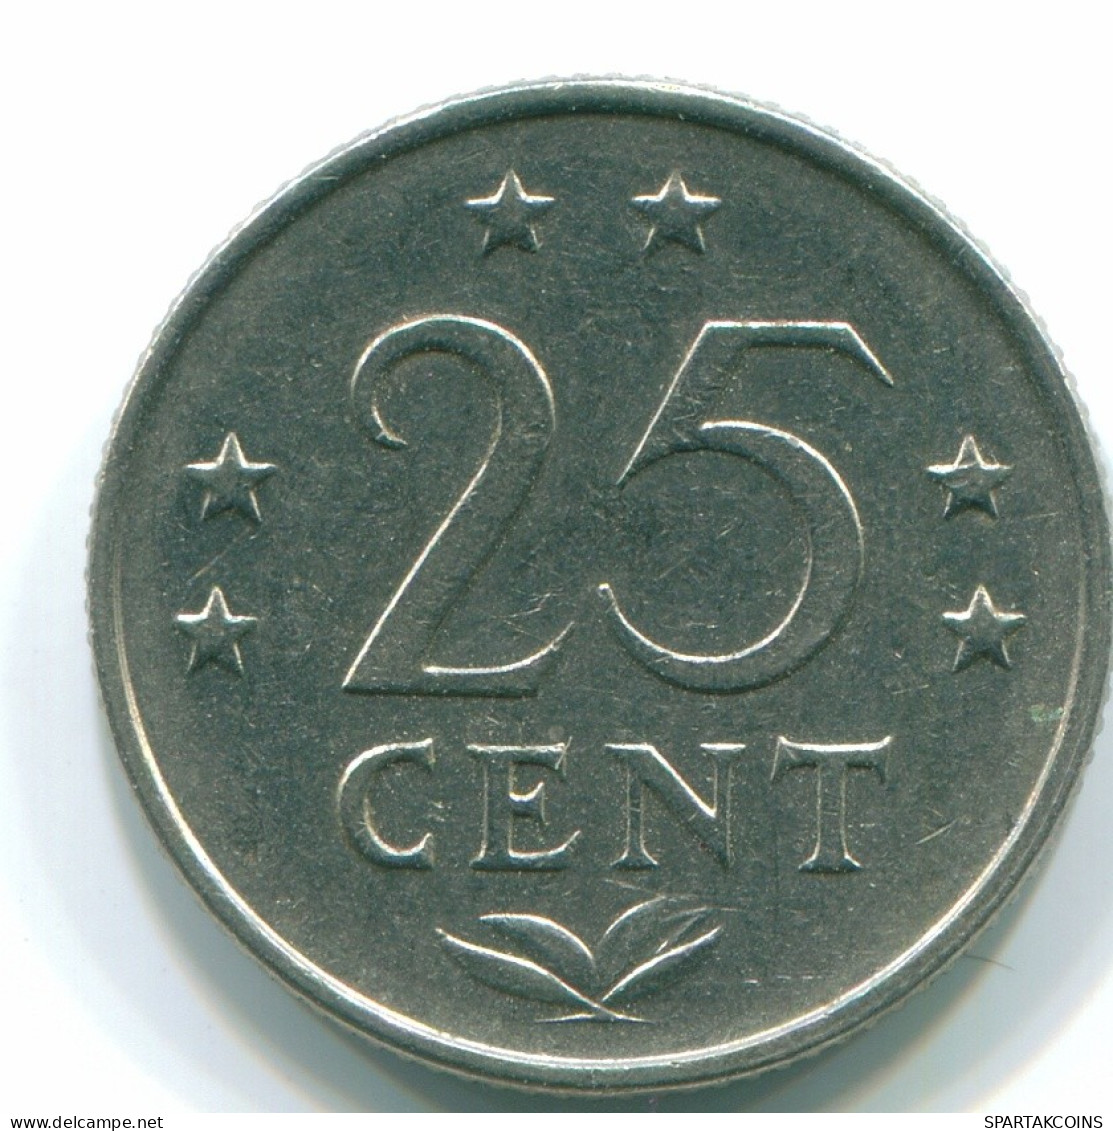 25 CENTS 1971 NIEDERLÄNDISCHE ANTILLEN Nickel Koloniale Münze #S11517.D.A - Antilles Néerlandaises